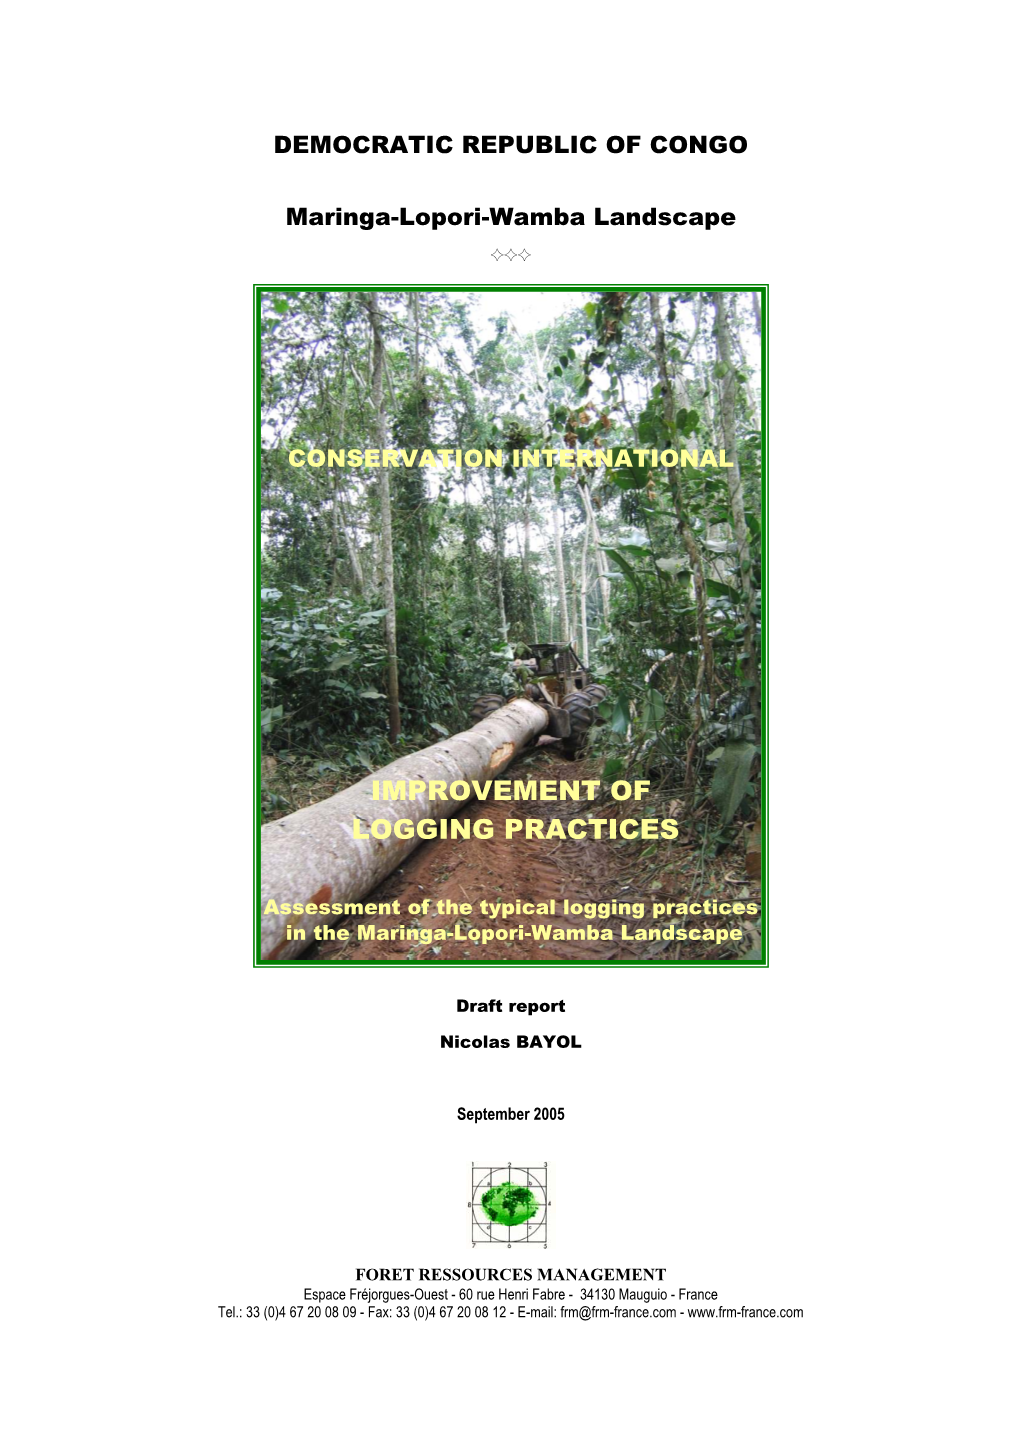 Improvement of Logging Practices